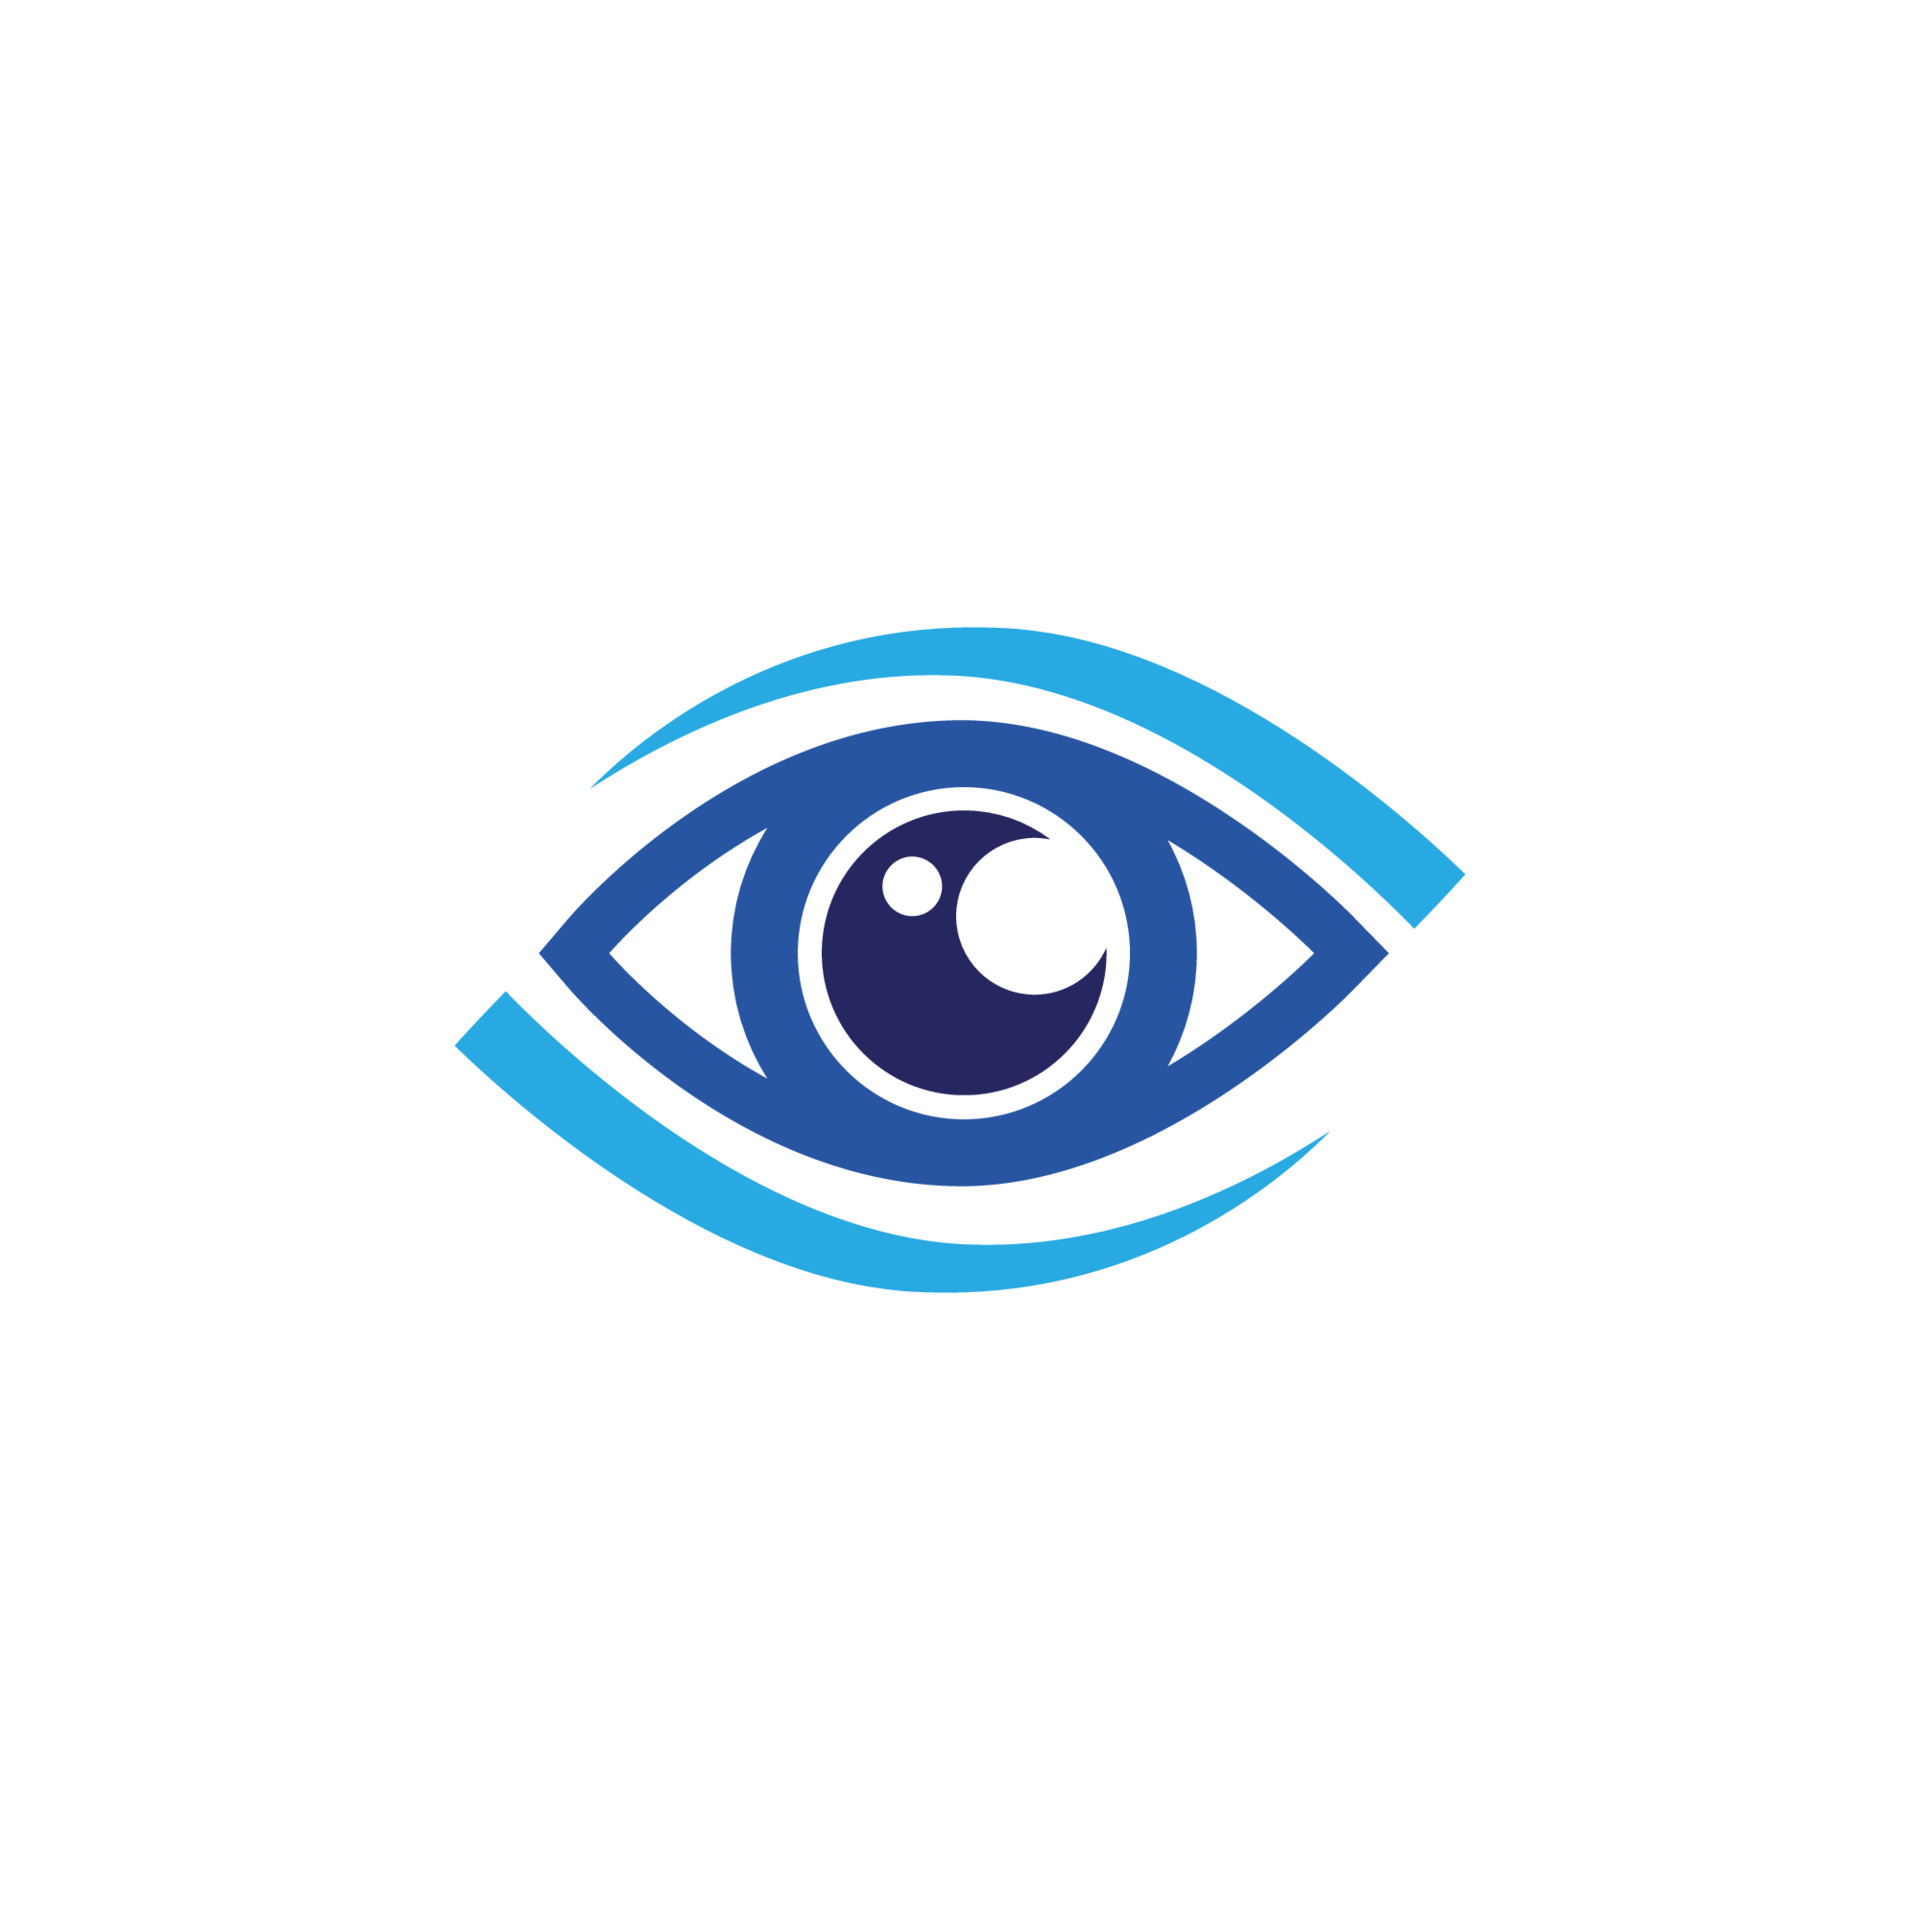 Eye Care vector logo design 22107404 Vector Art at Vecteezy